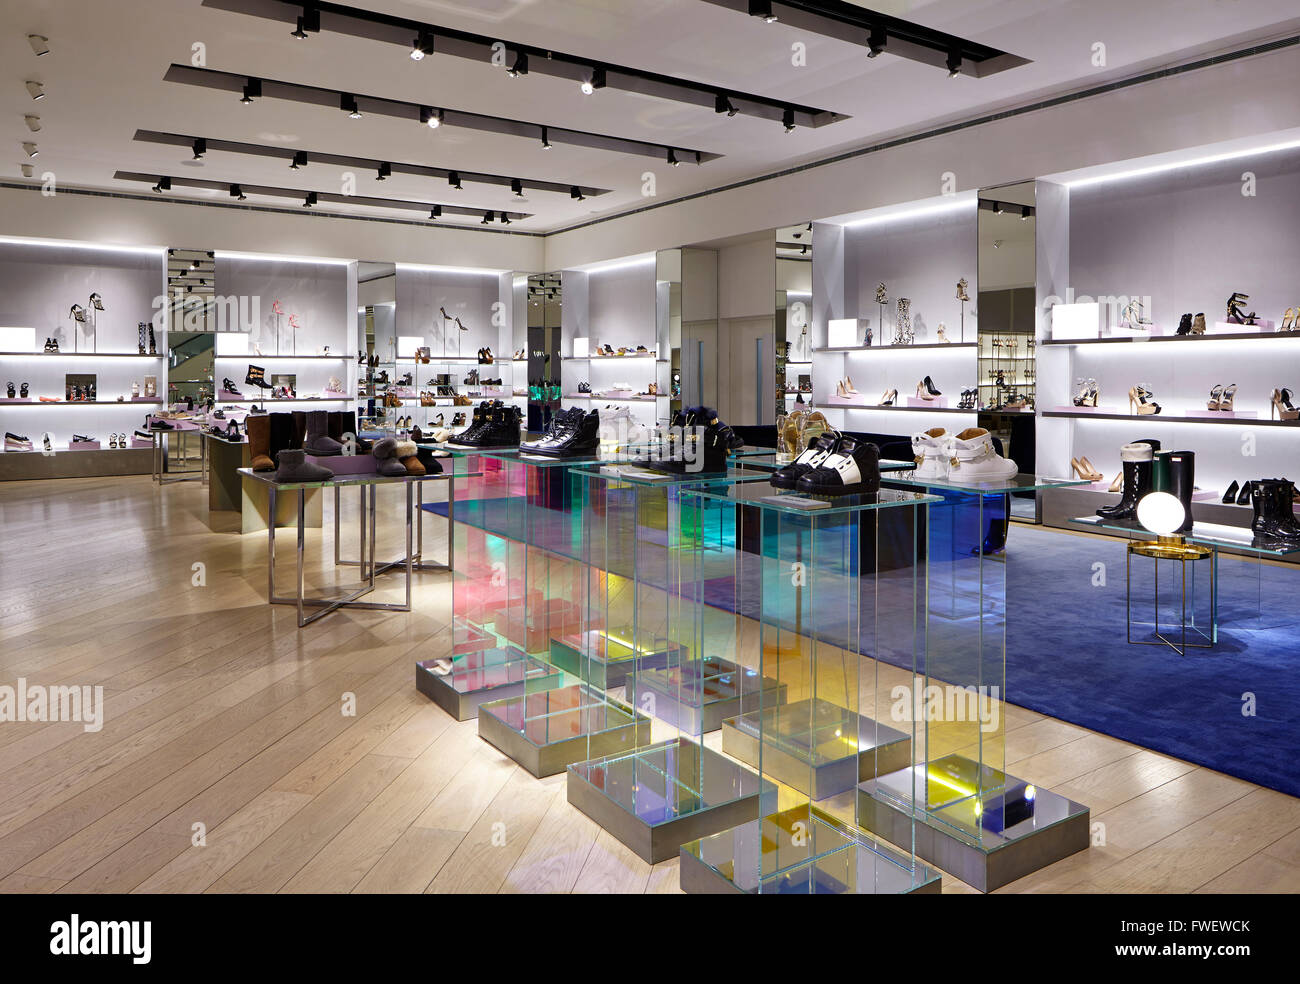 Louis Vuitton Manchester Selfridges store, United Kingdom